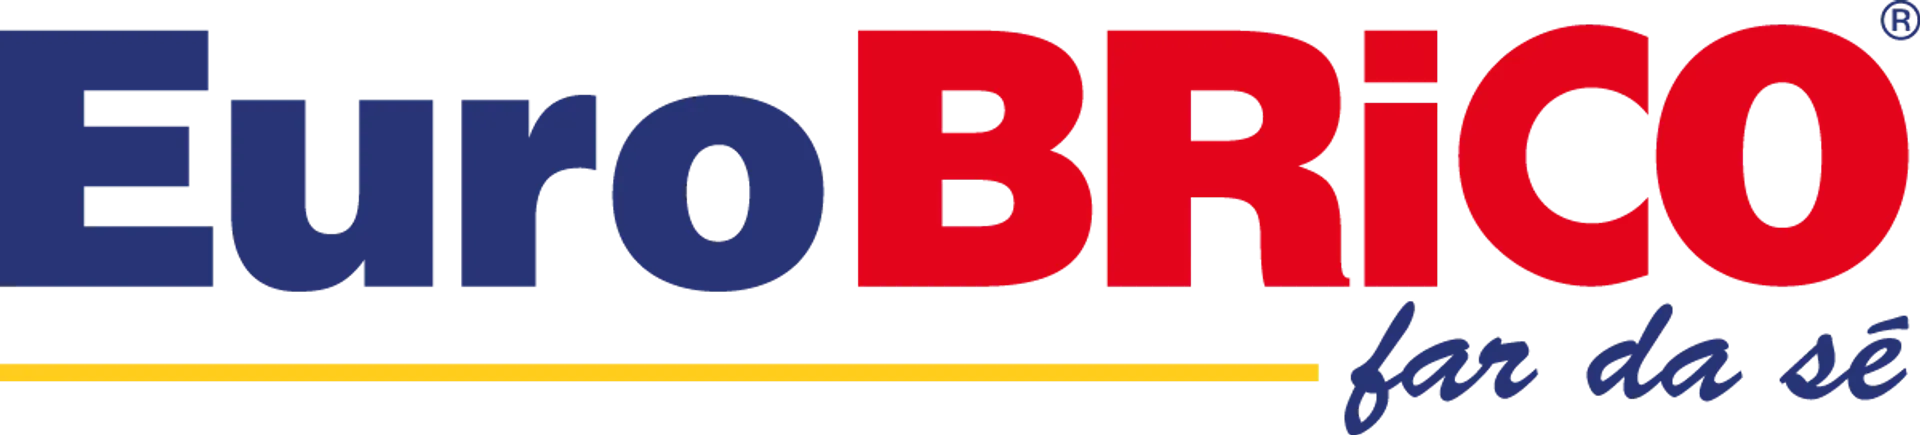 EUROBRICO logo